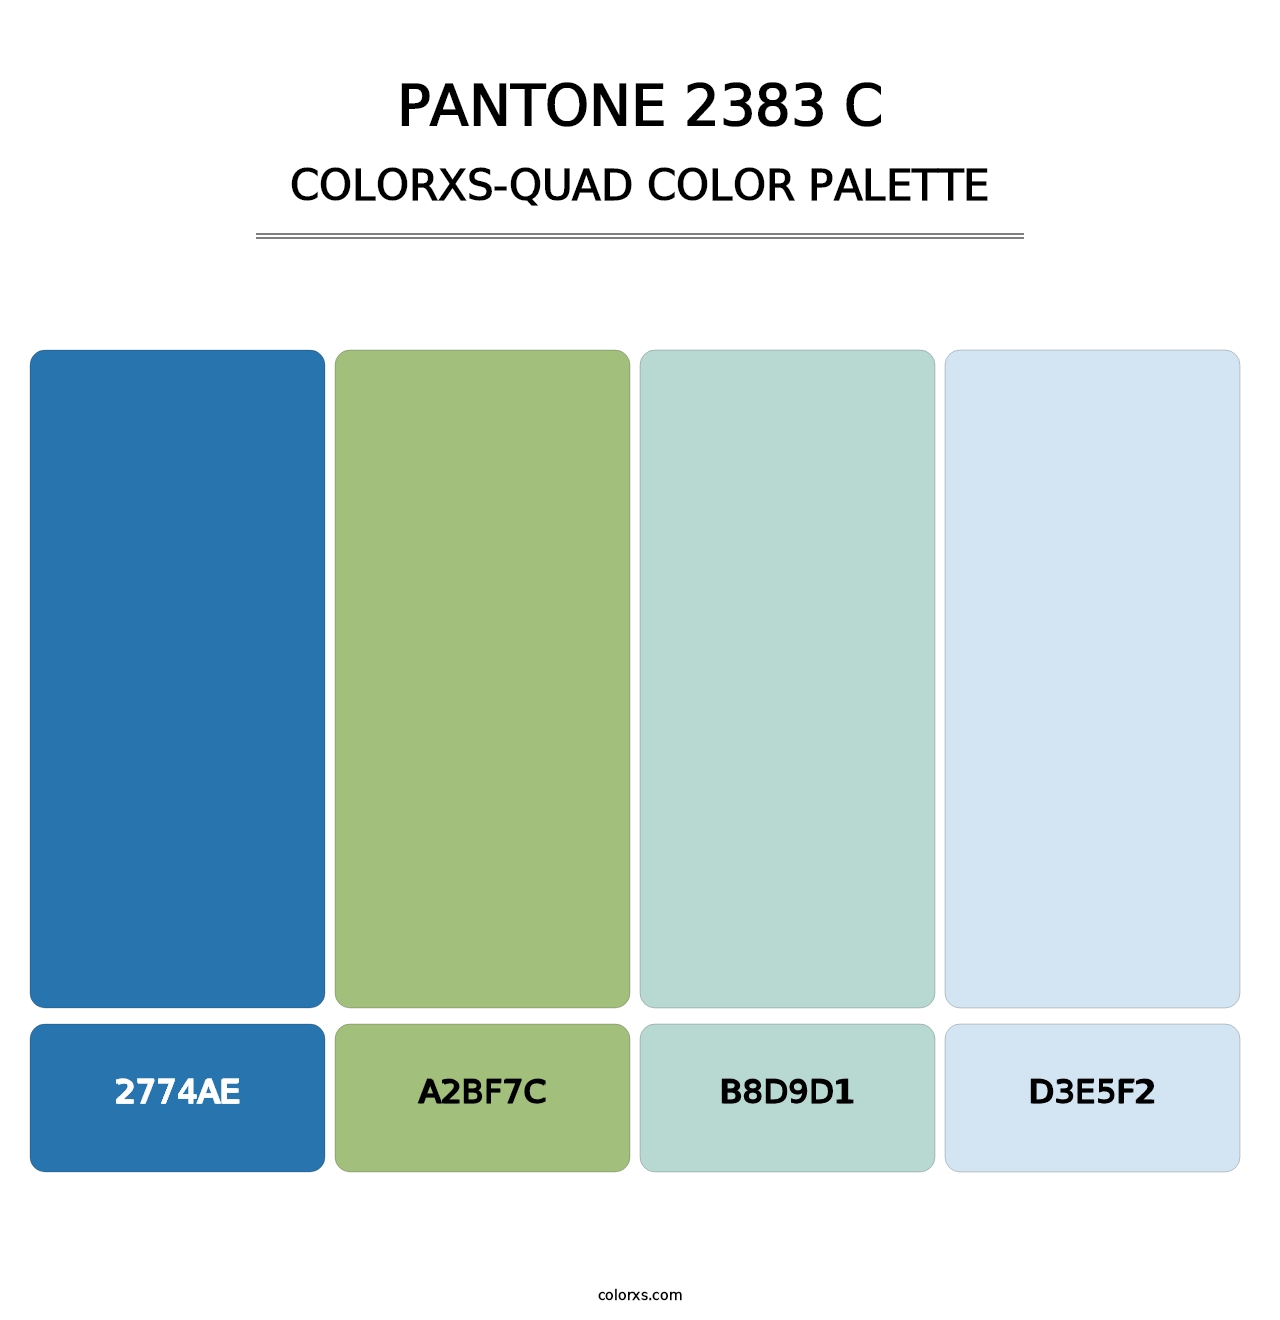 PANTONE 2383 C - Colorxs Quad Palette